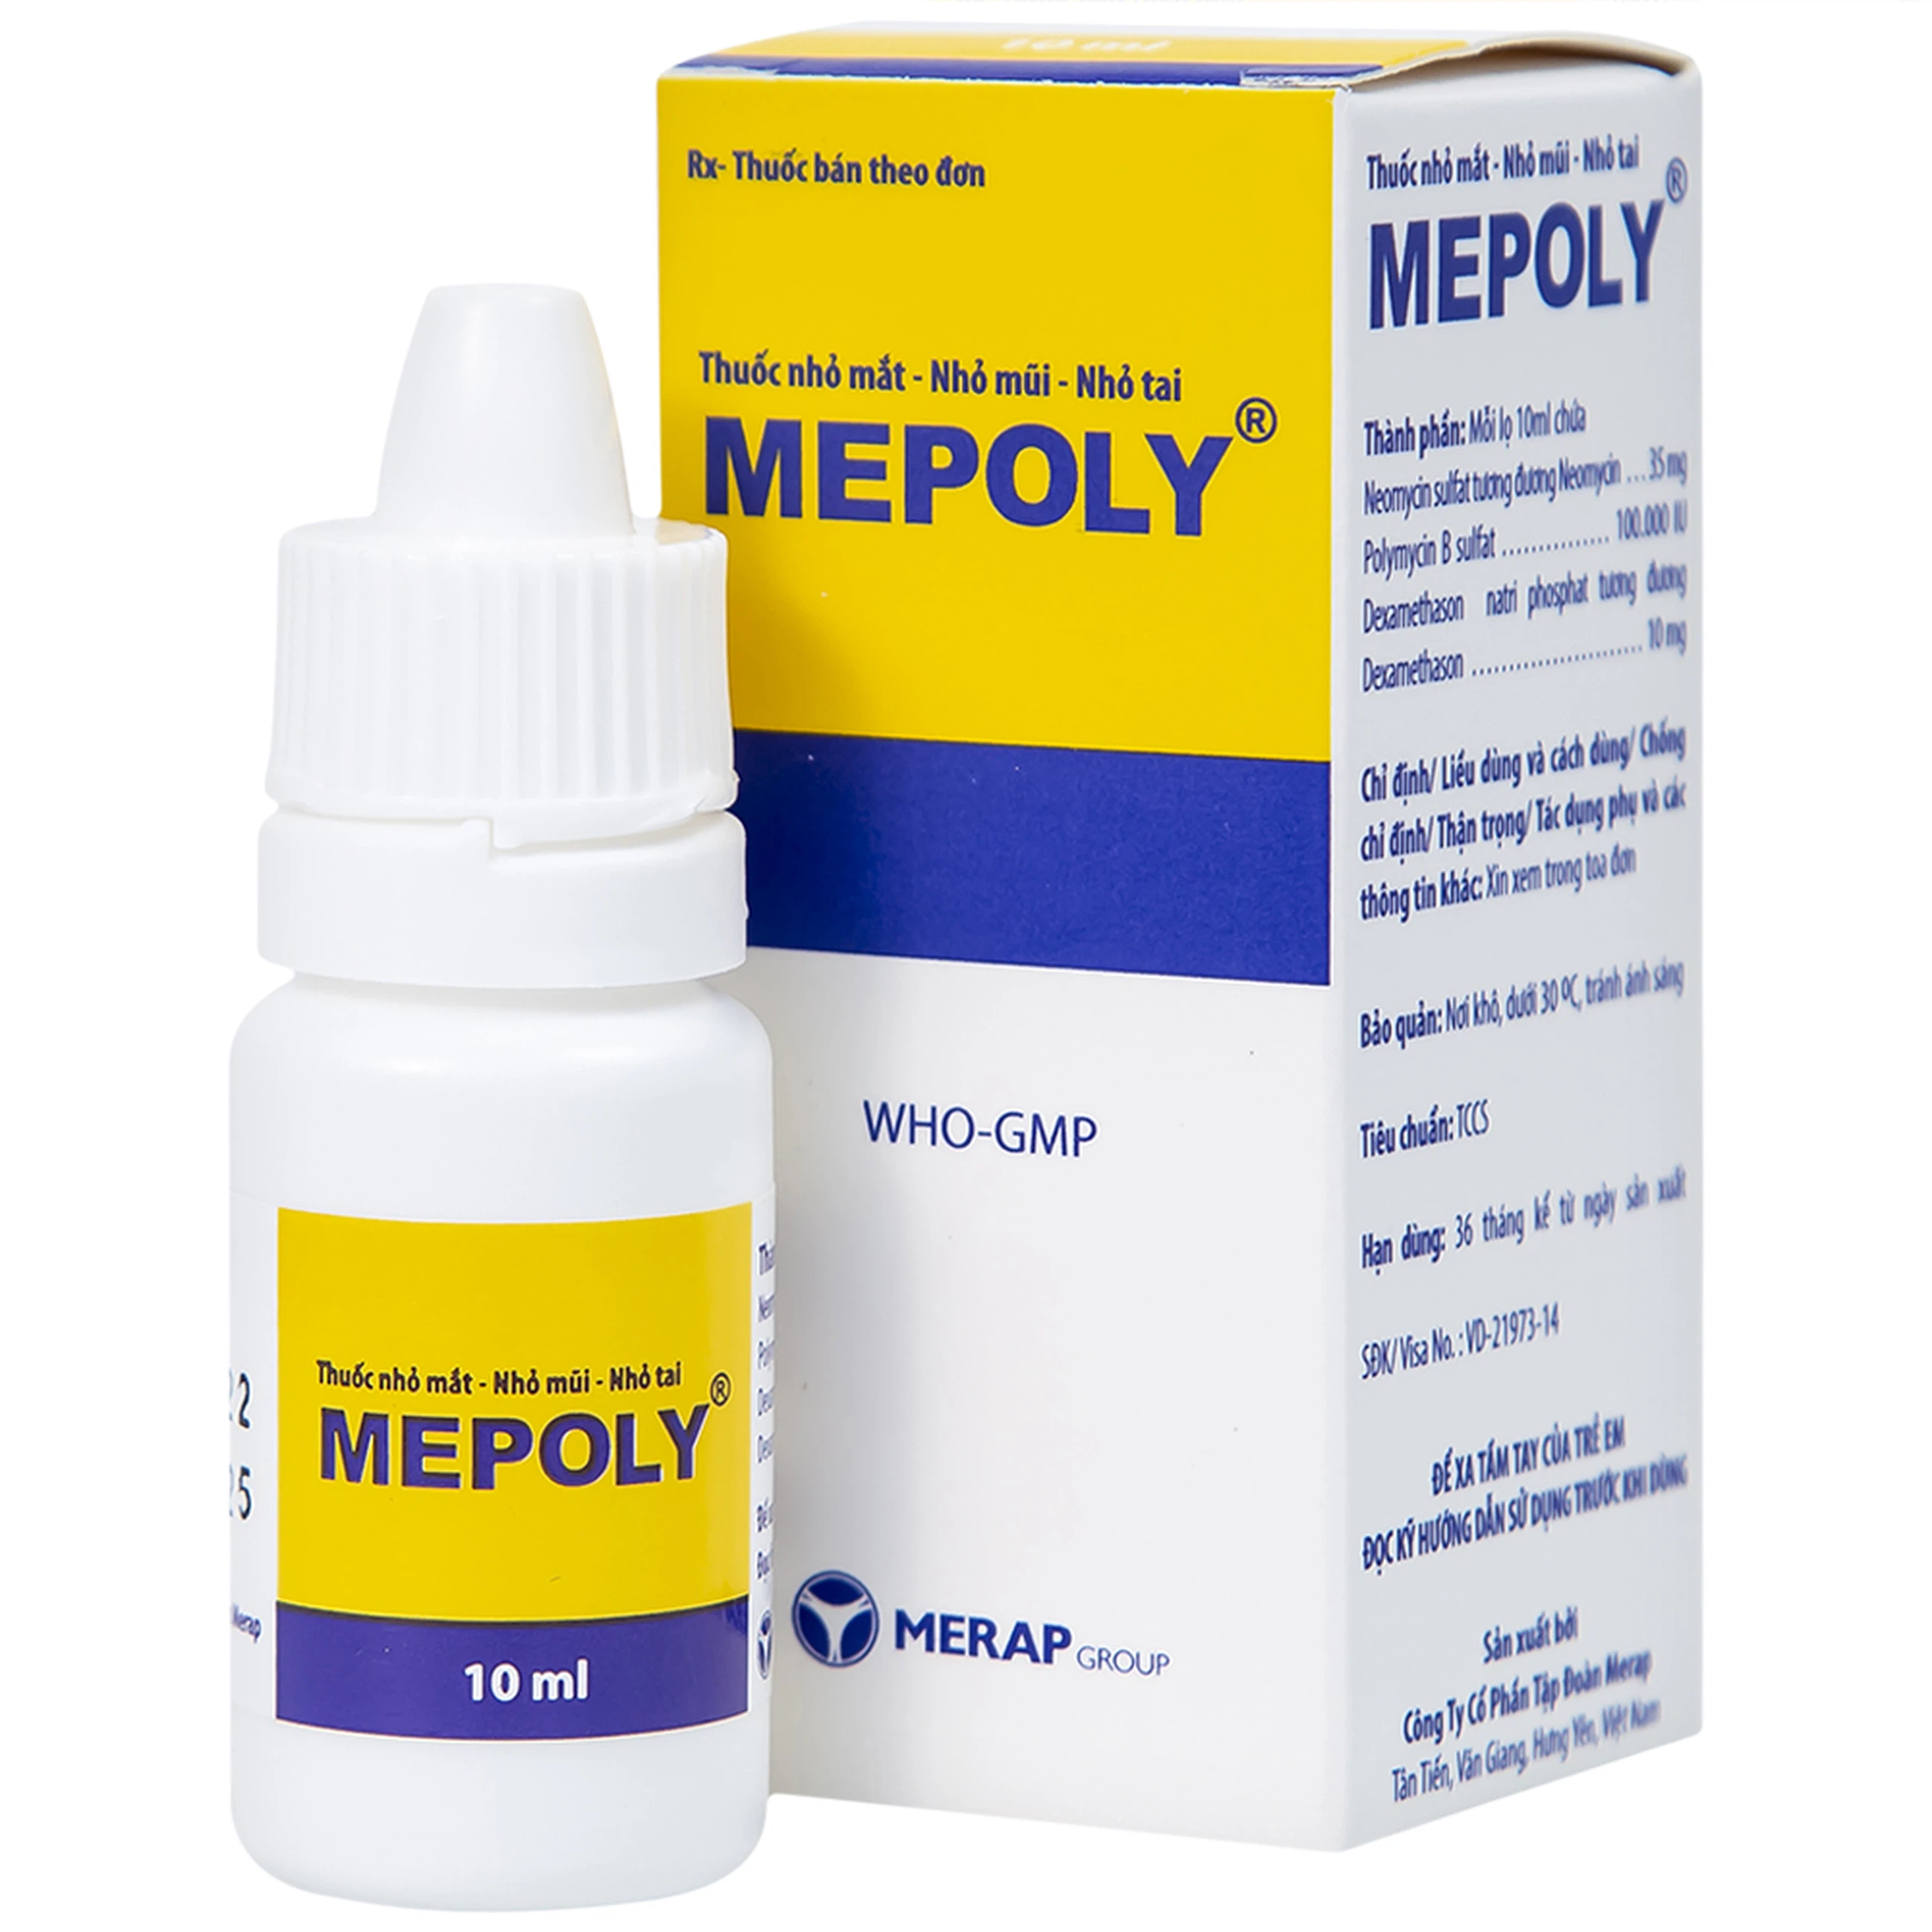 Thuốc Mepoly Merap dùng cho viêm kết mạc, mi mắt, viêm mũi, viêm tai (10ml)